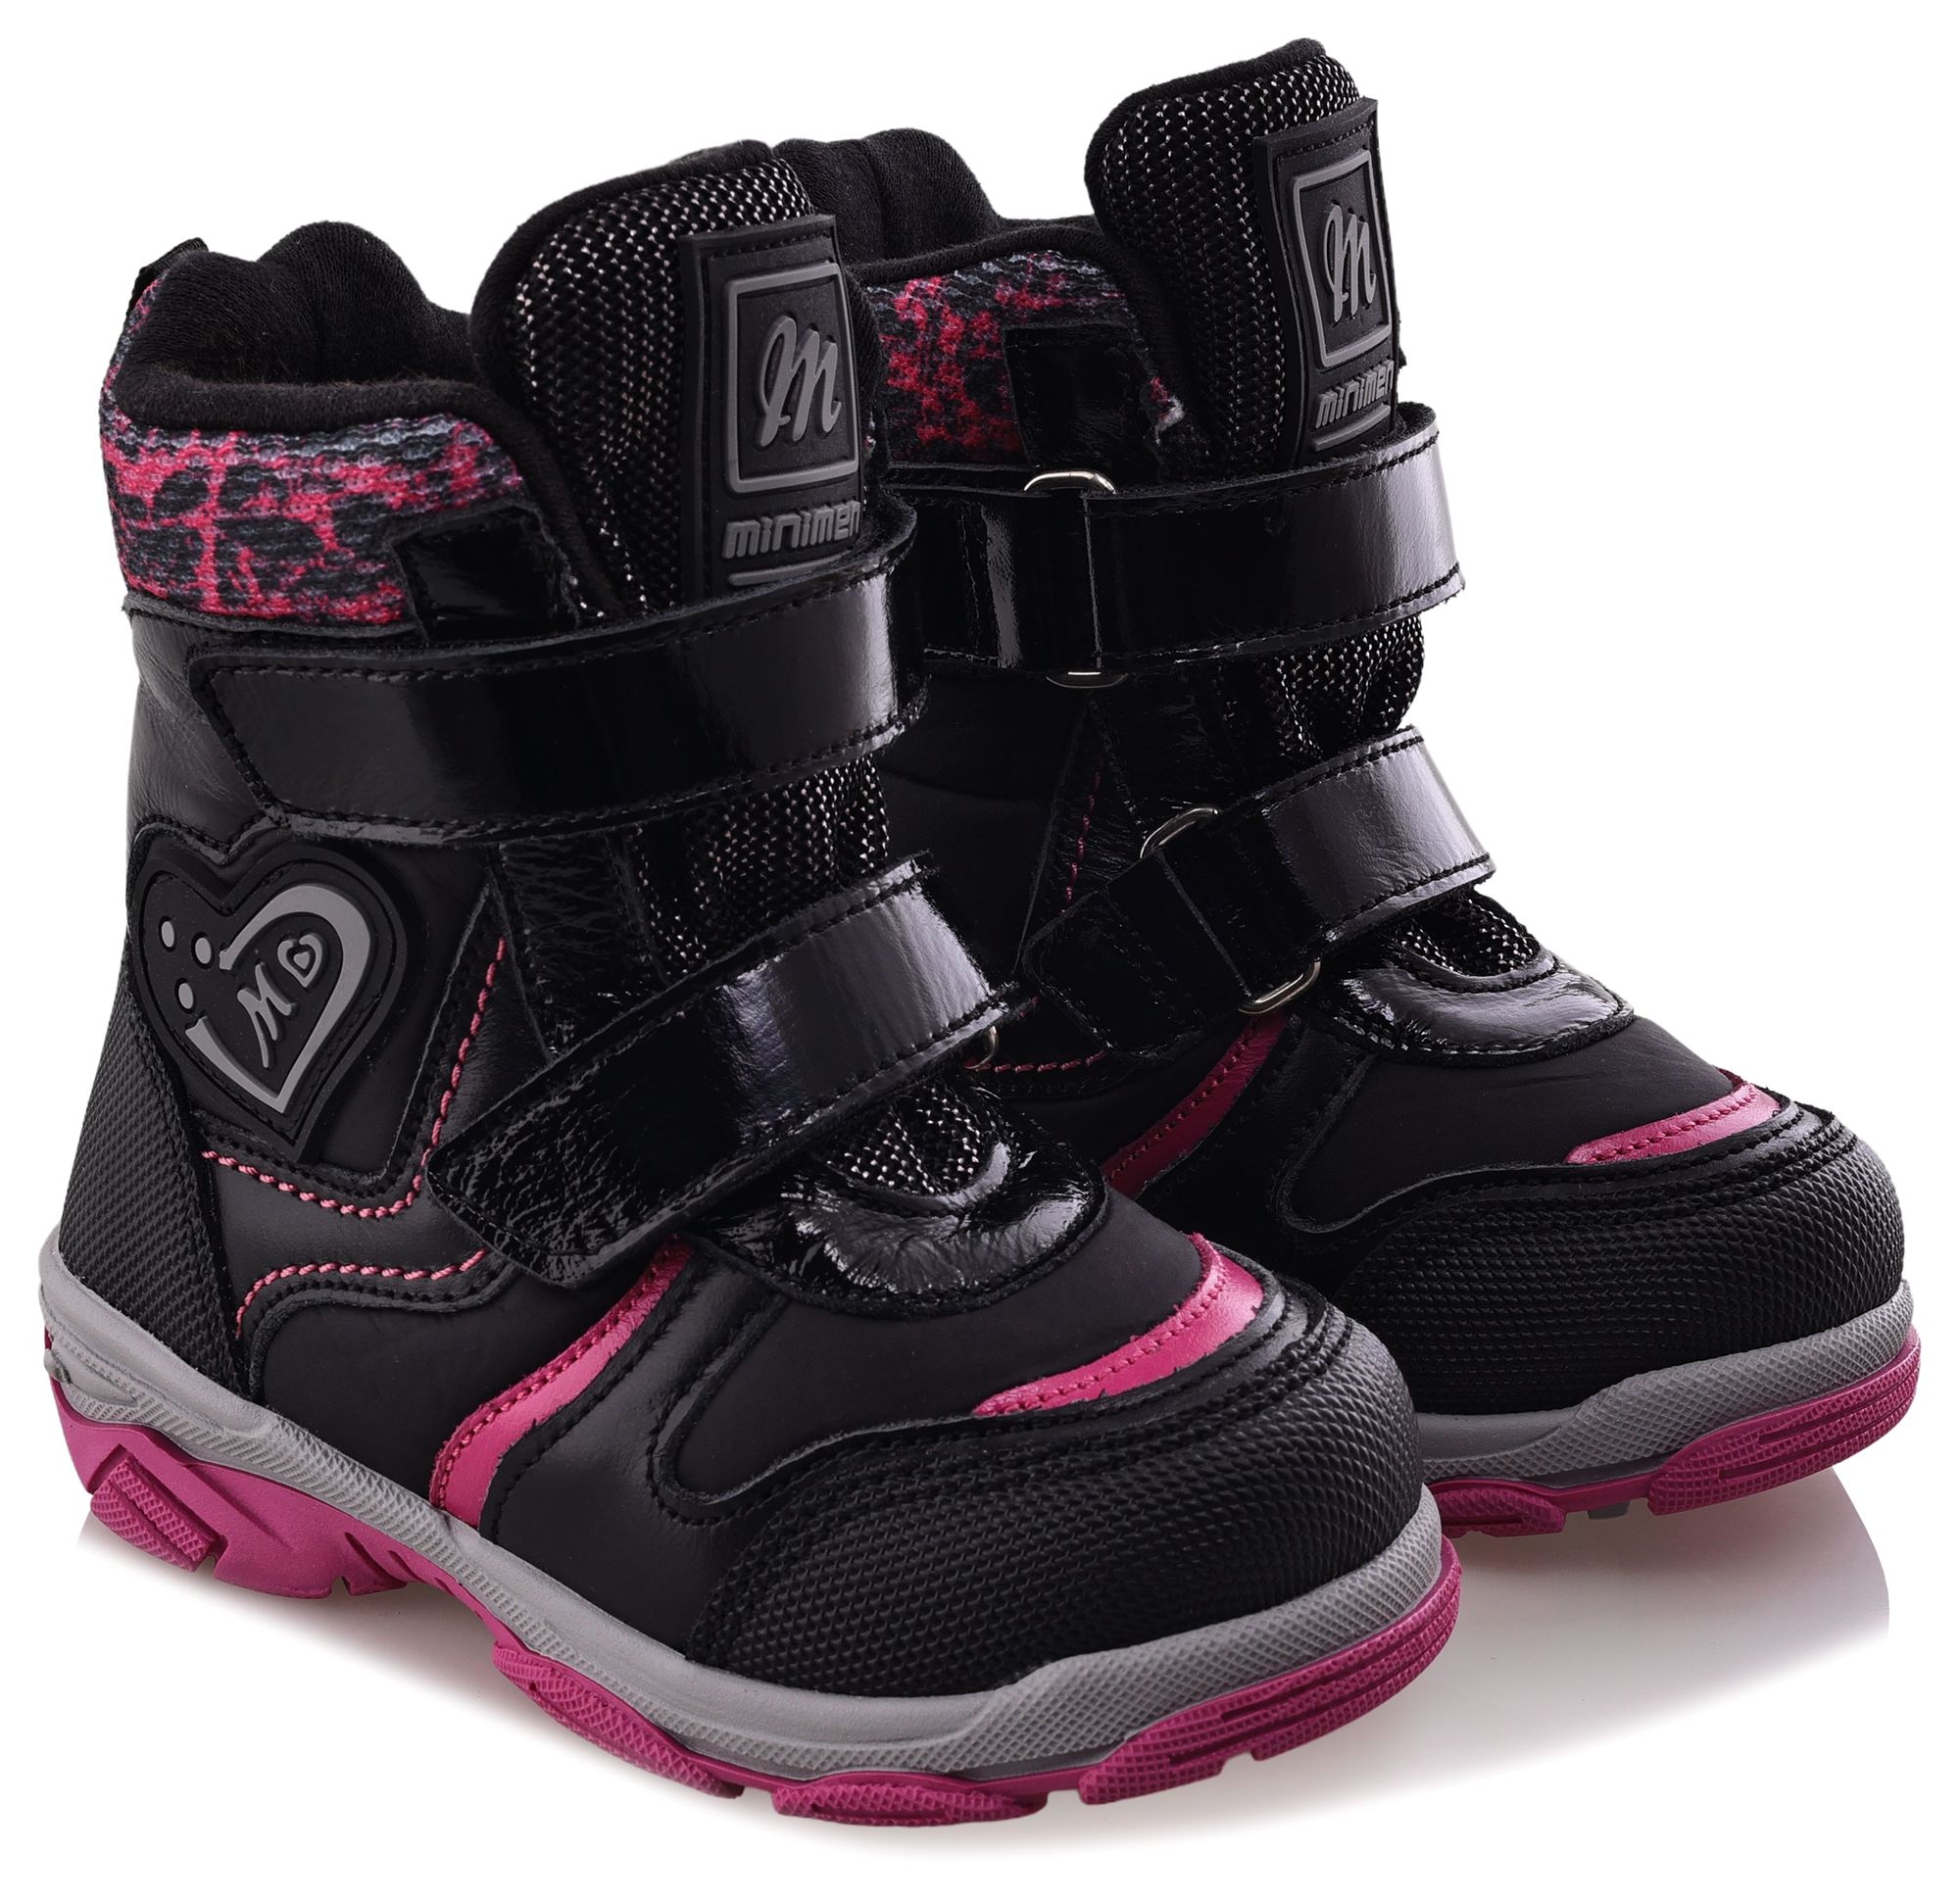 Ботинки Minimen для девочек, чёрные, размер 34, 2656-54-23B-01 ботинки minimen для девочек розовые размер 28 2656 53 23b 02